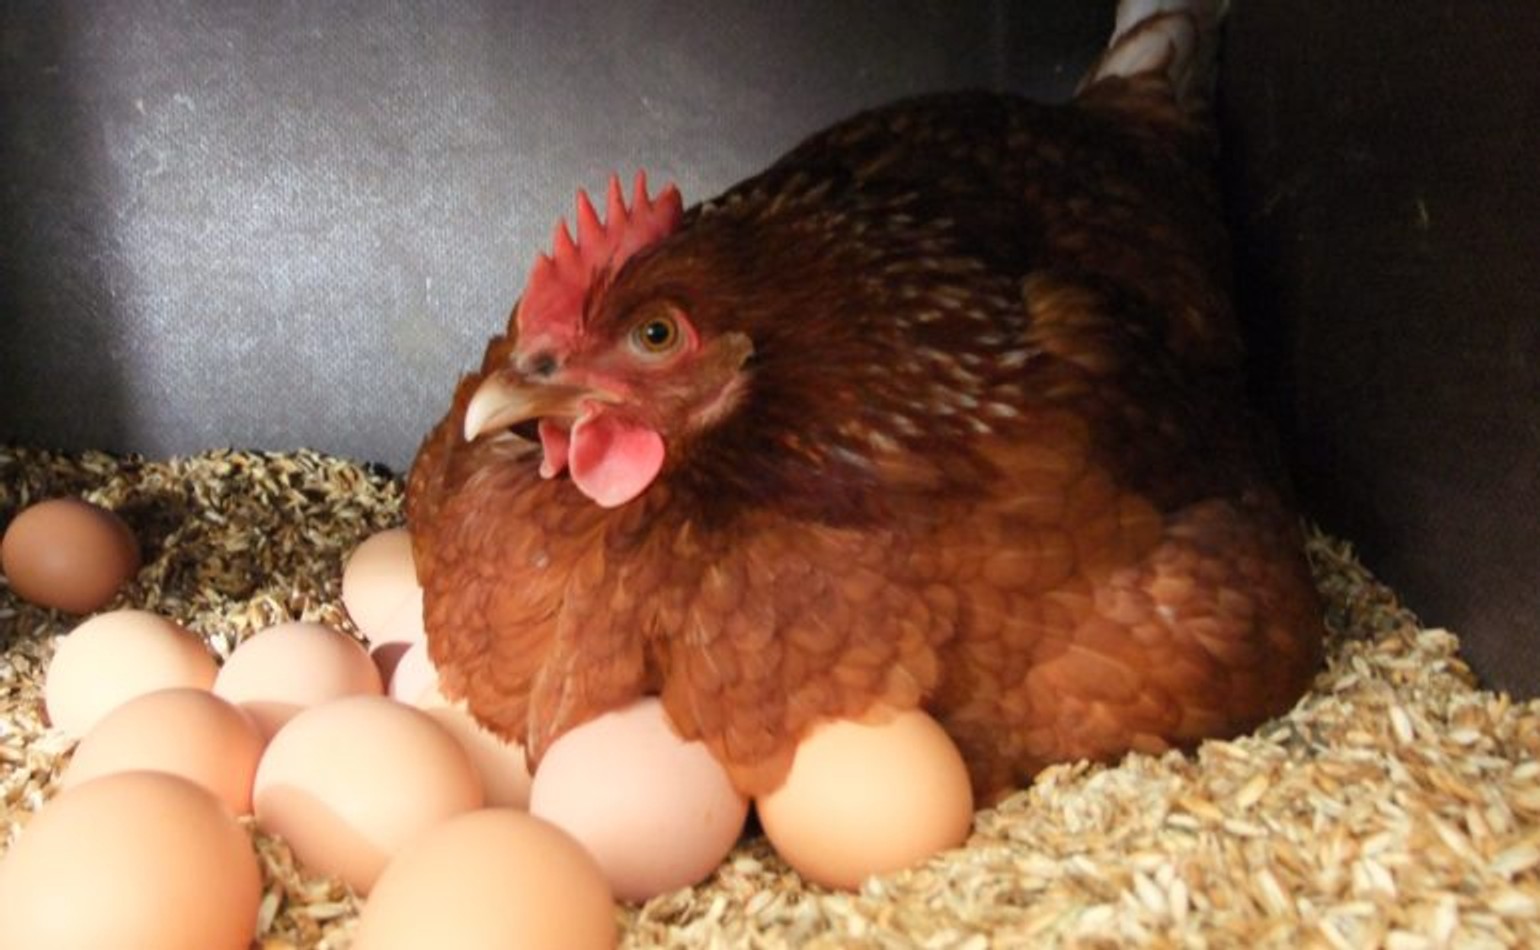 Американцы завели рекордное число домашних кур из-за роста цен на яйца